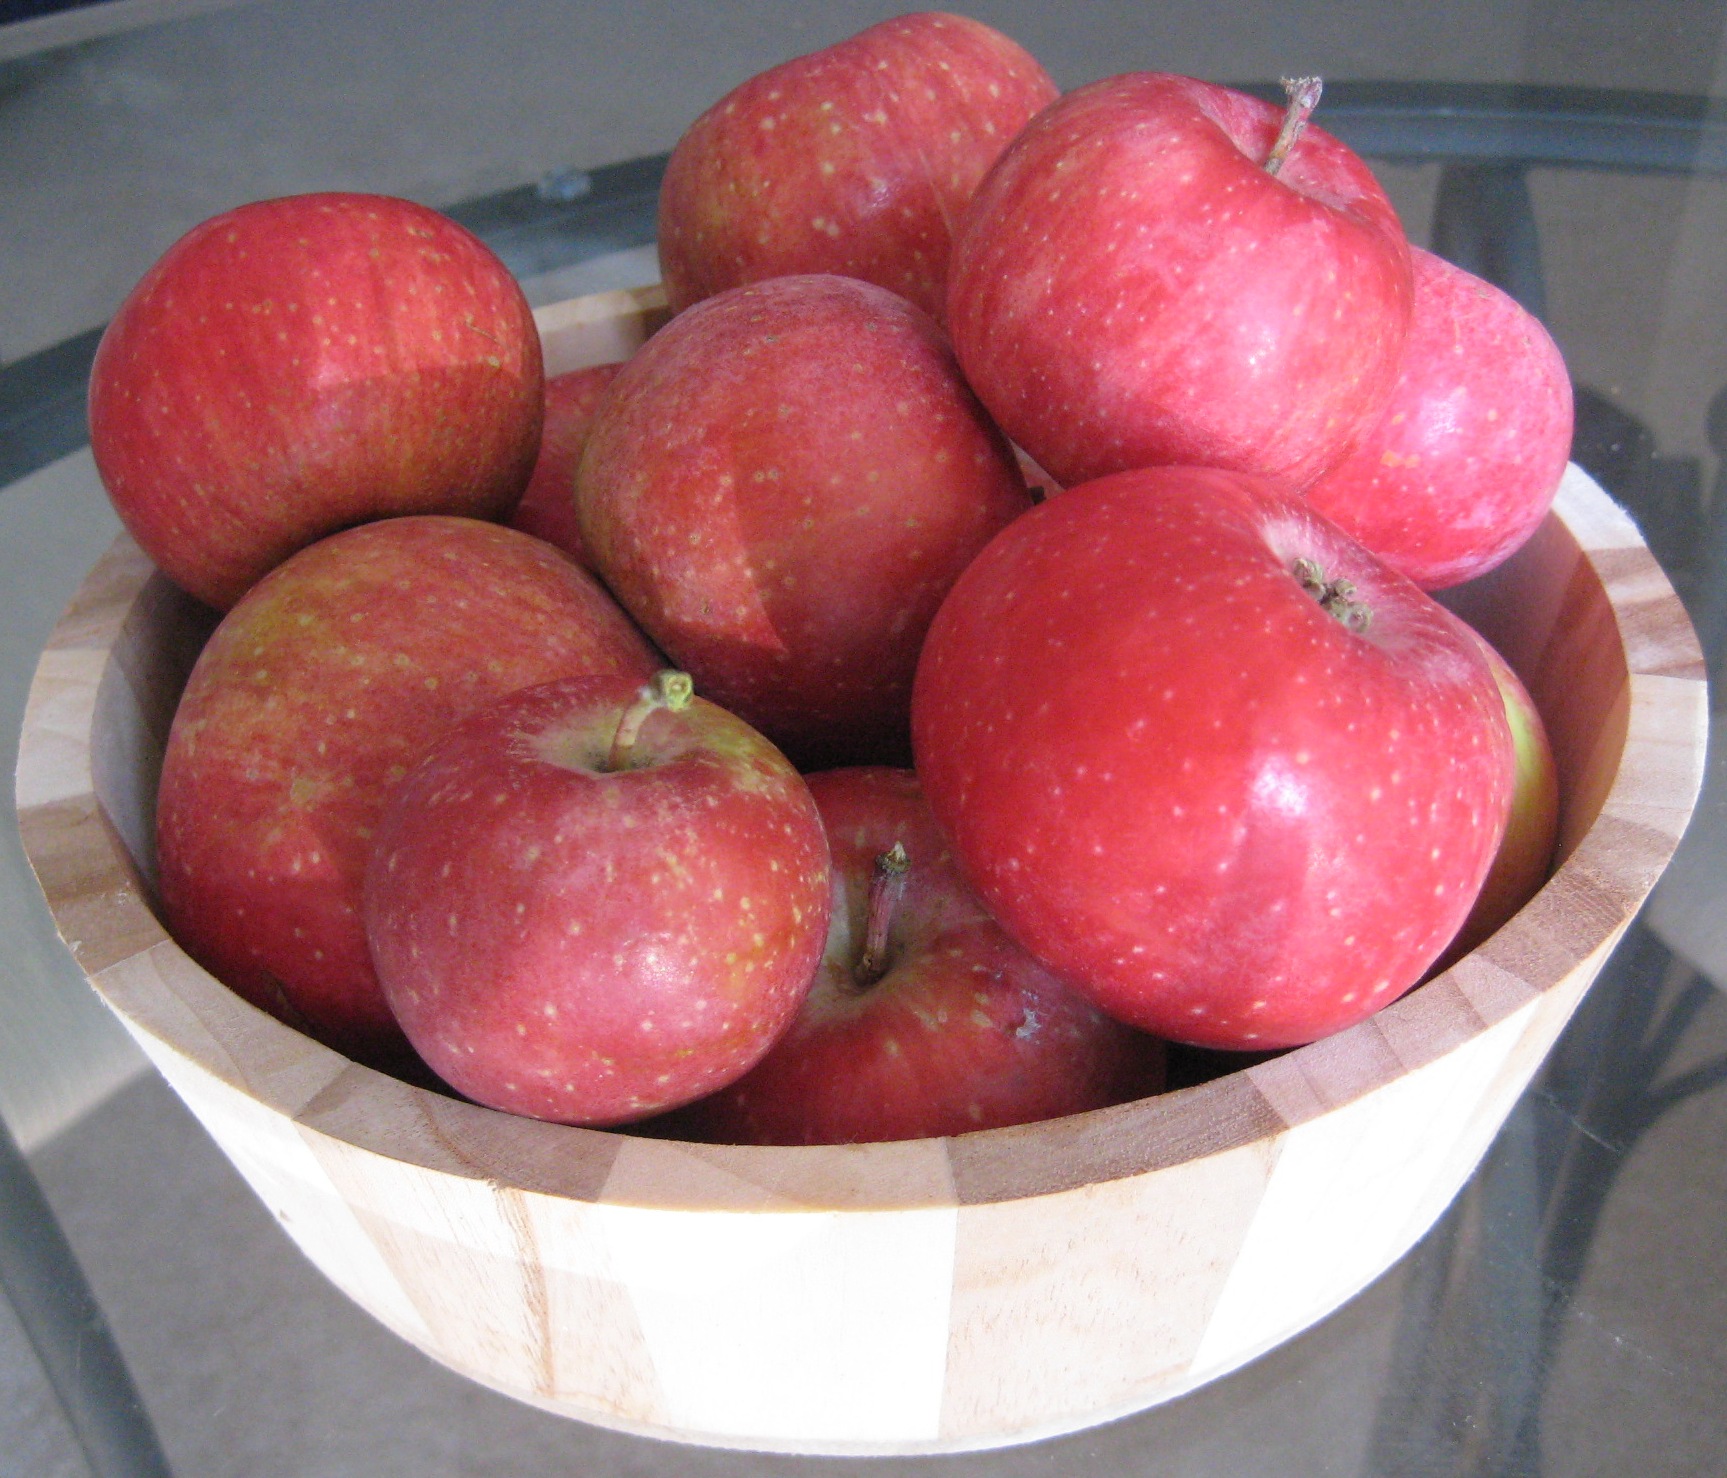 Яблоня пепин шафран фото и описание